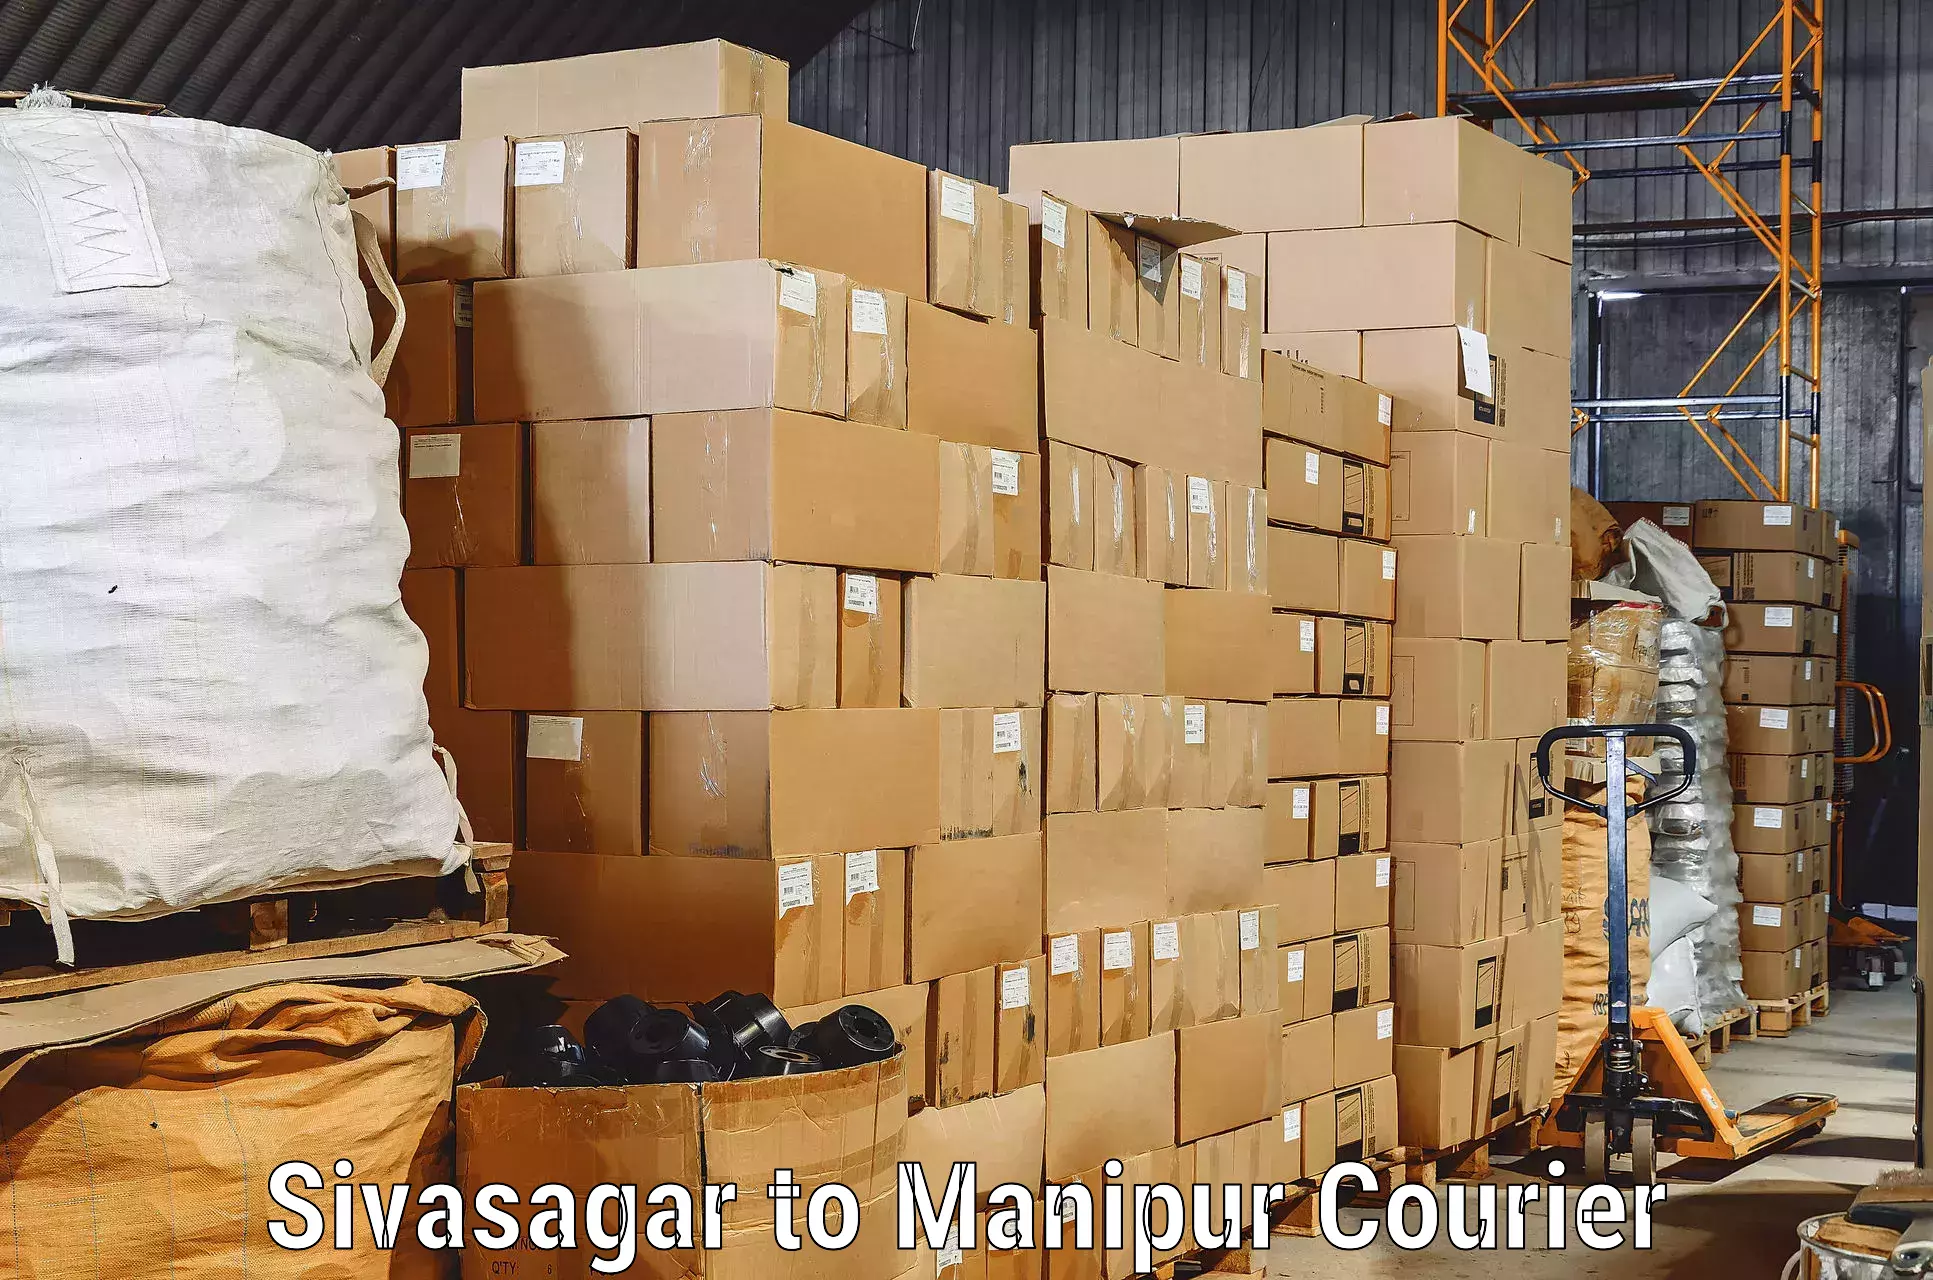 Efficient moving company Sivasagar to Moirang